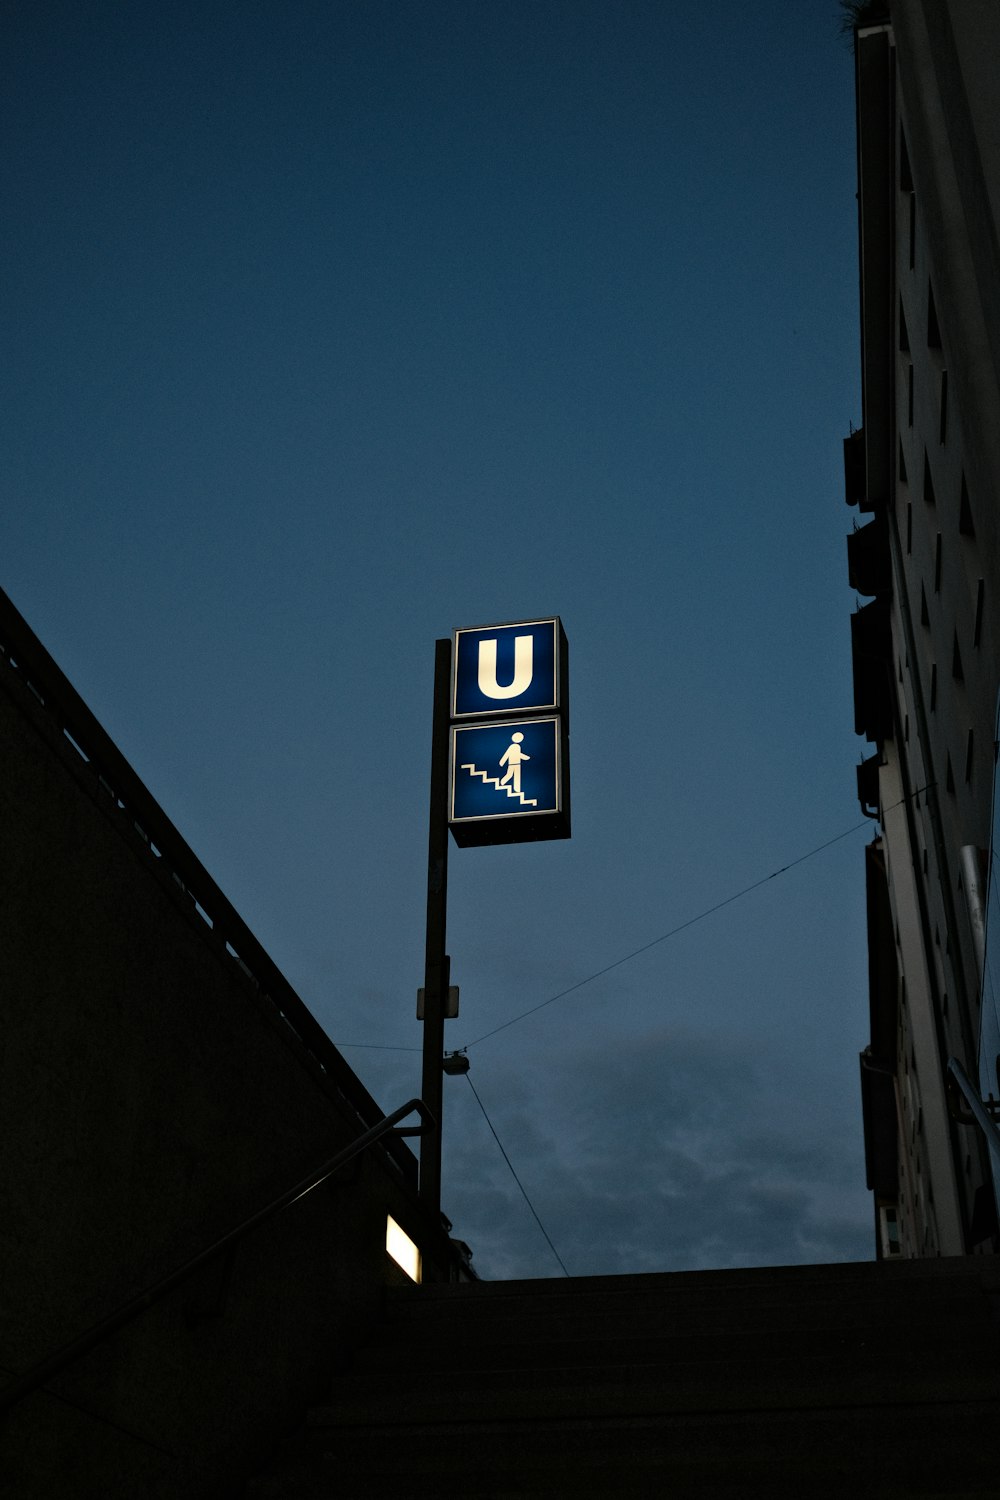 a sign on a pole